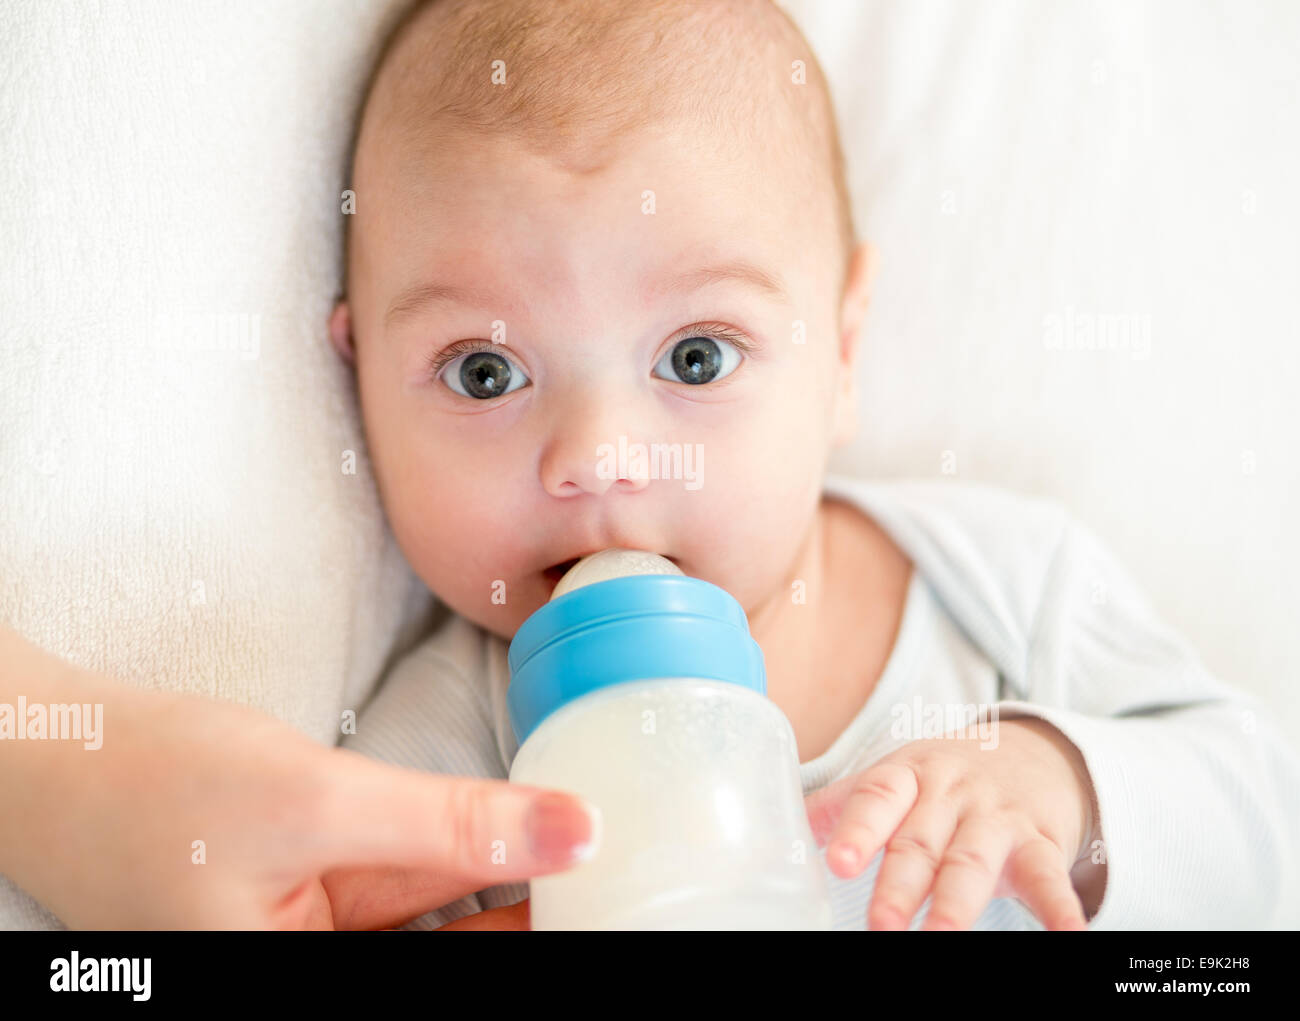 https://c8.alamy.com/comp/E9K2H8/baby-boy-eating-from-milk-bottle-E9K2H8.jpg